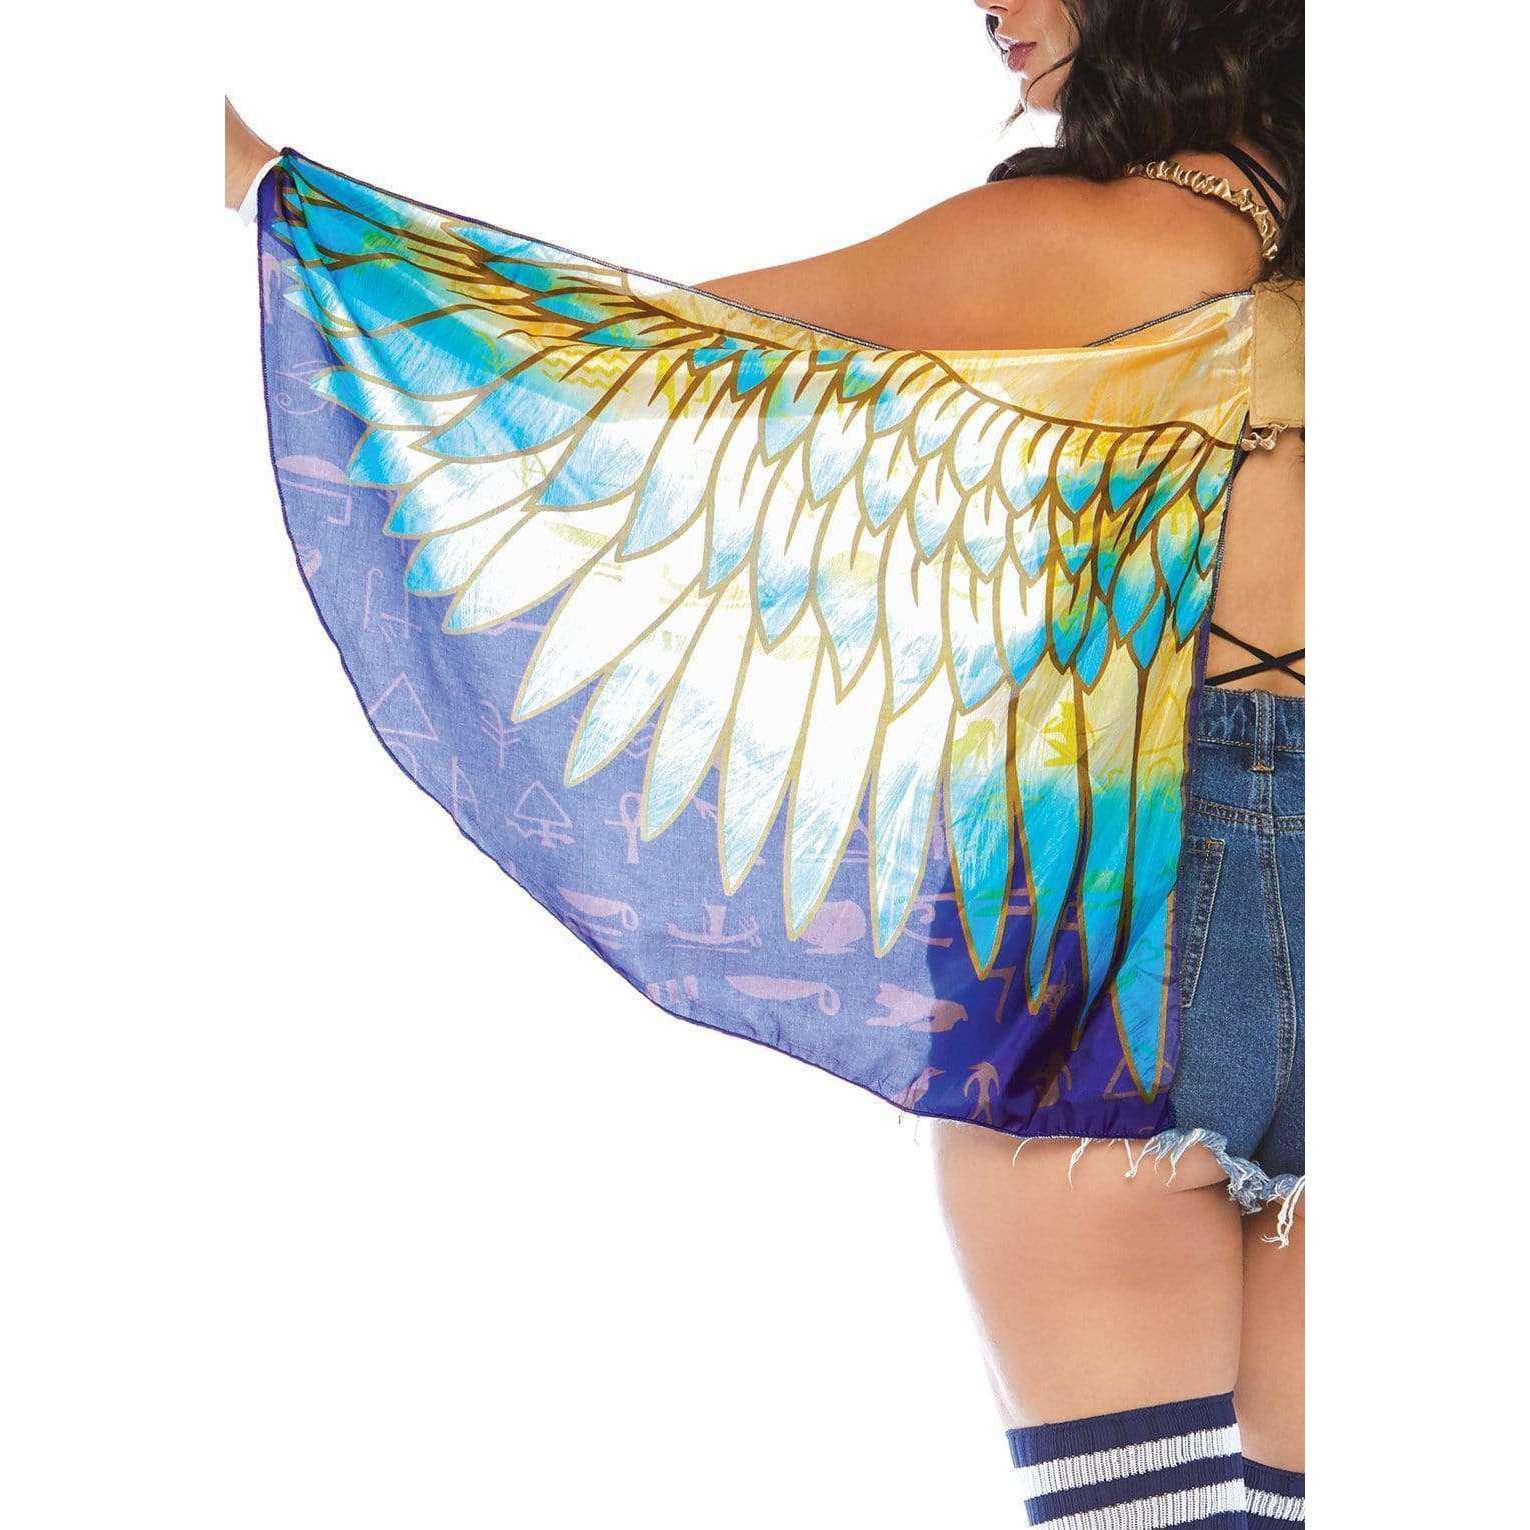 Egyptian Goddess Wings